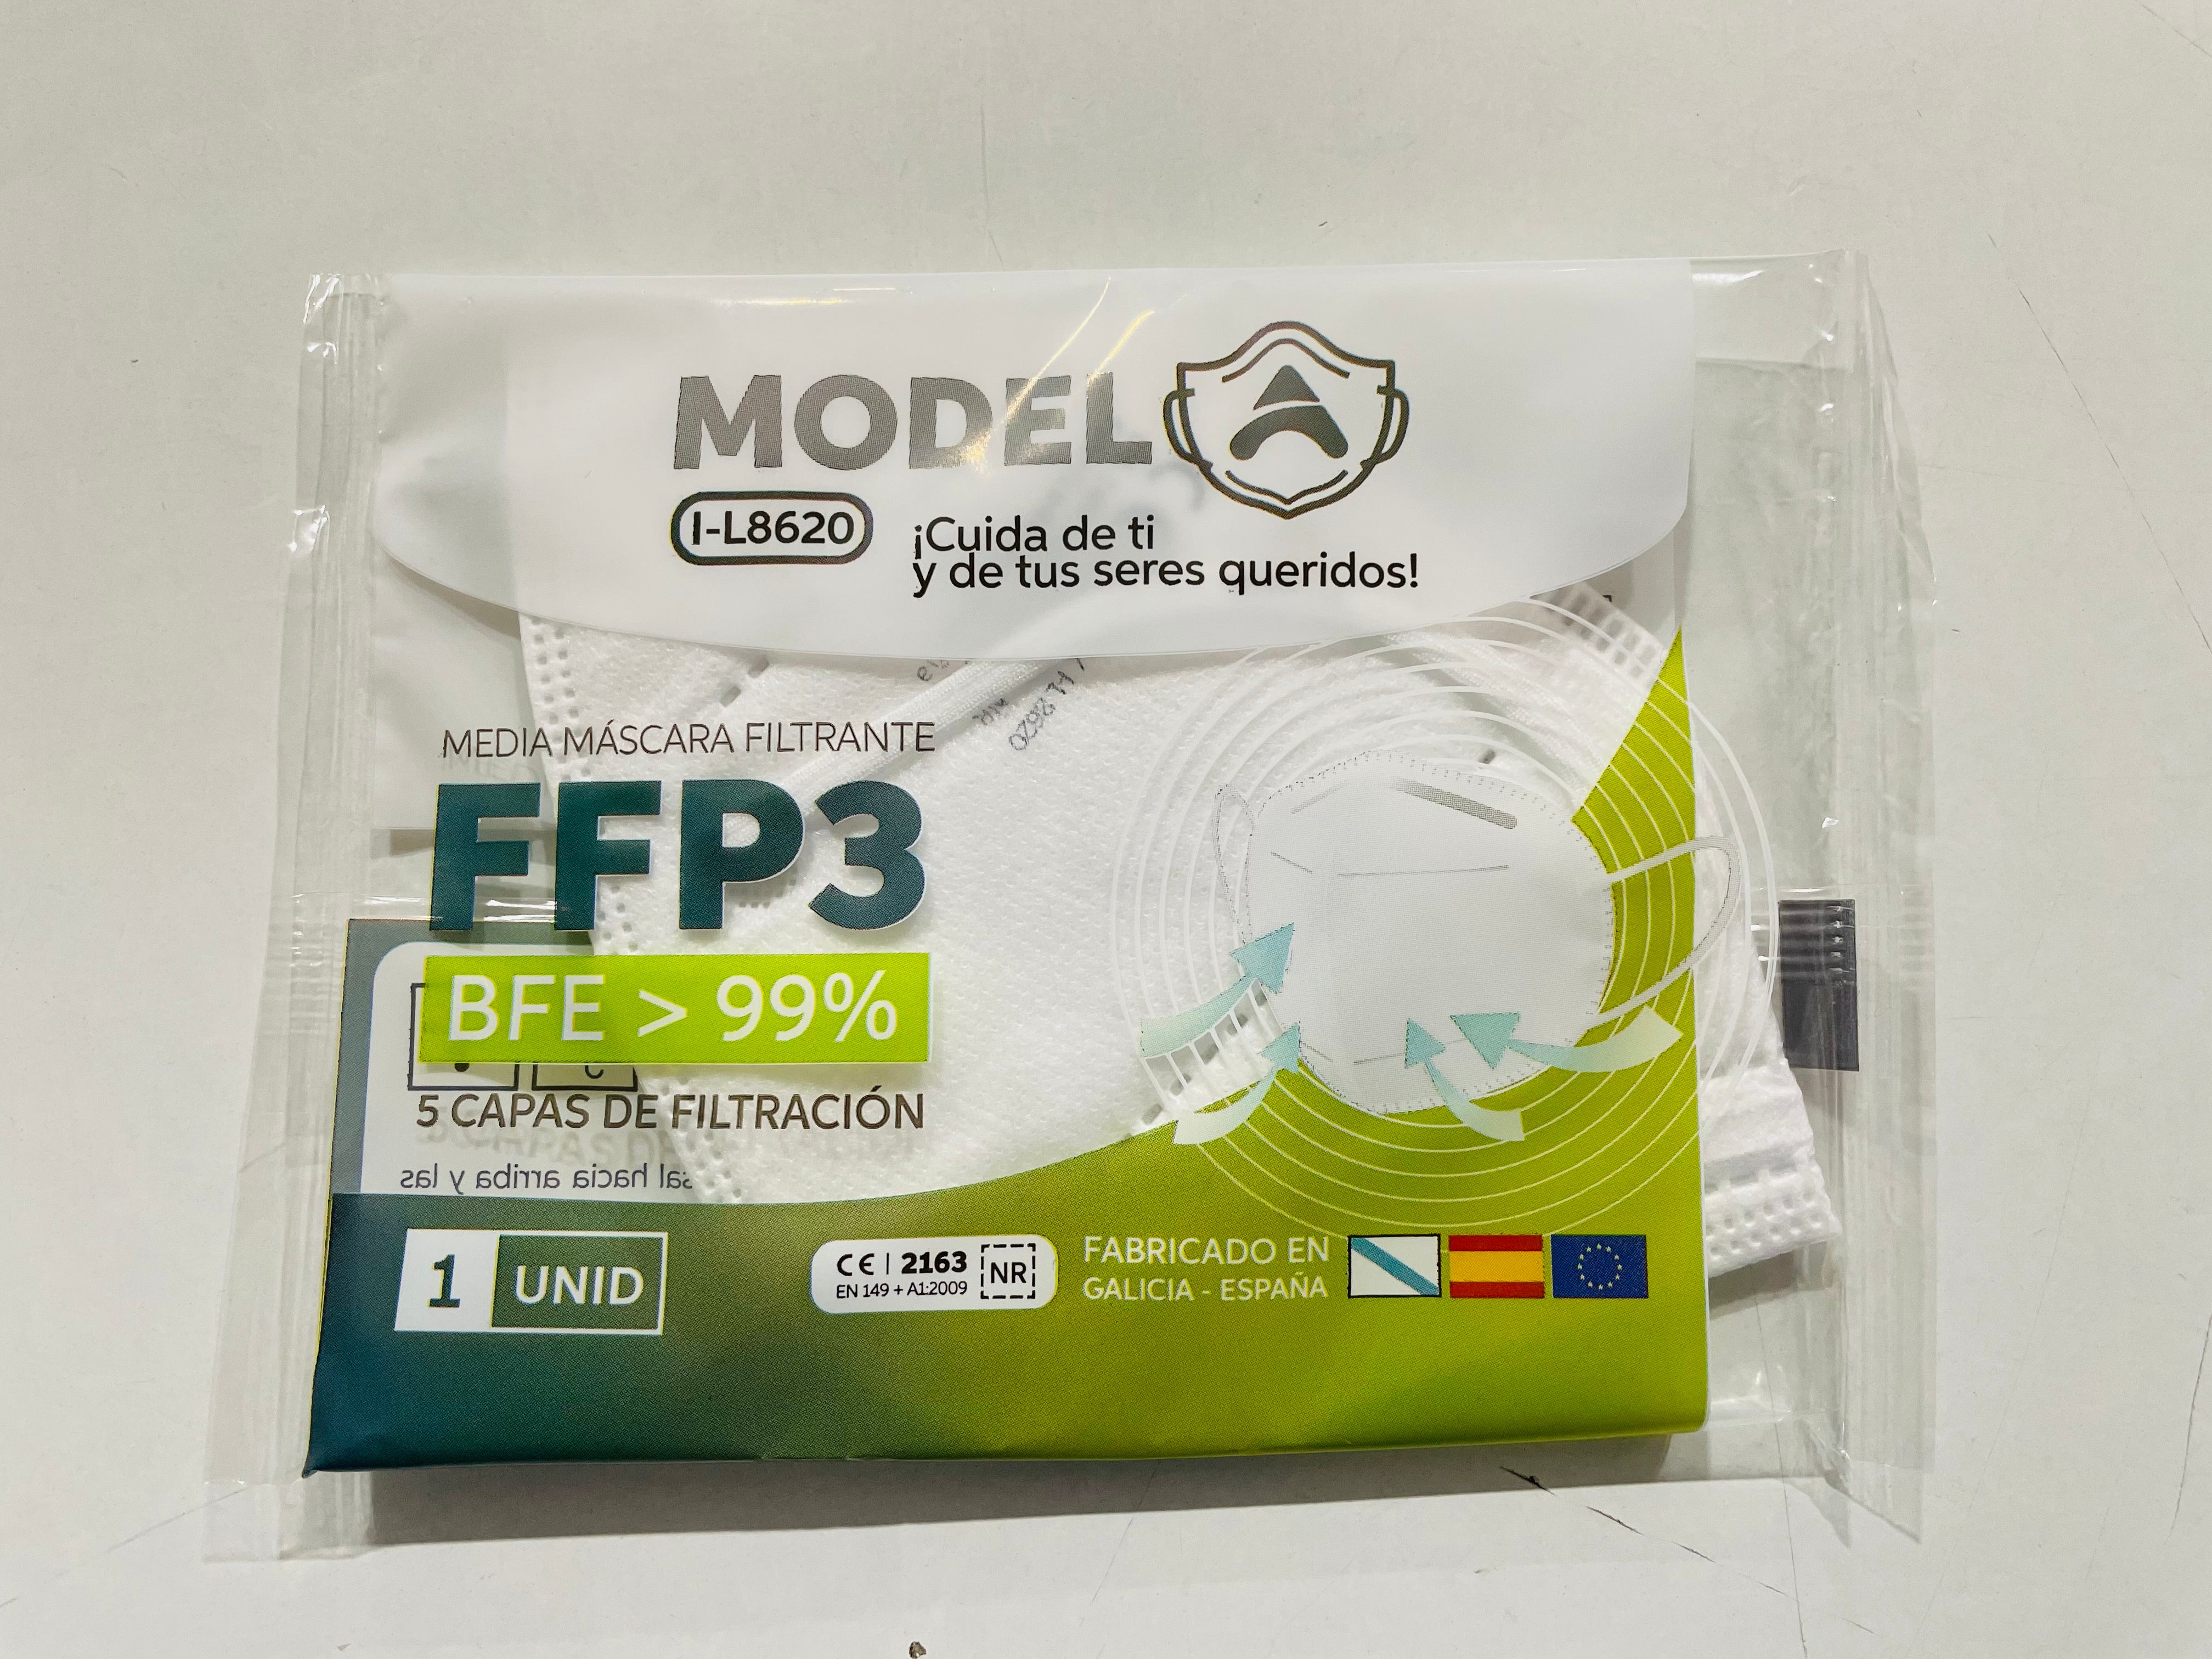 Mascarillas FFP3 Homologadas Españolas. Caja 20 Unidades. Desechable  Proteccion Personal 5 Capas. Mascara Filtro 95%. Blanco